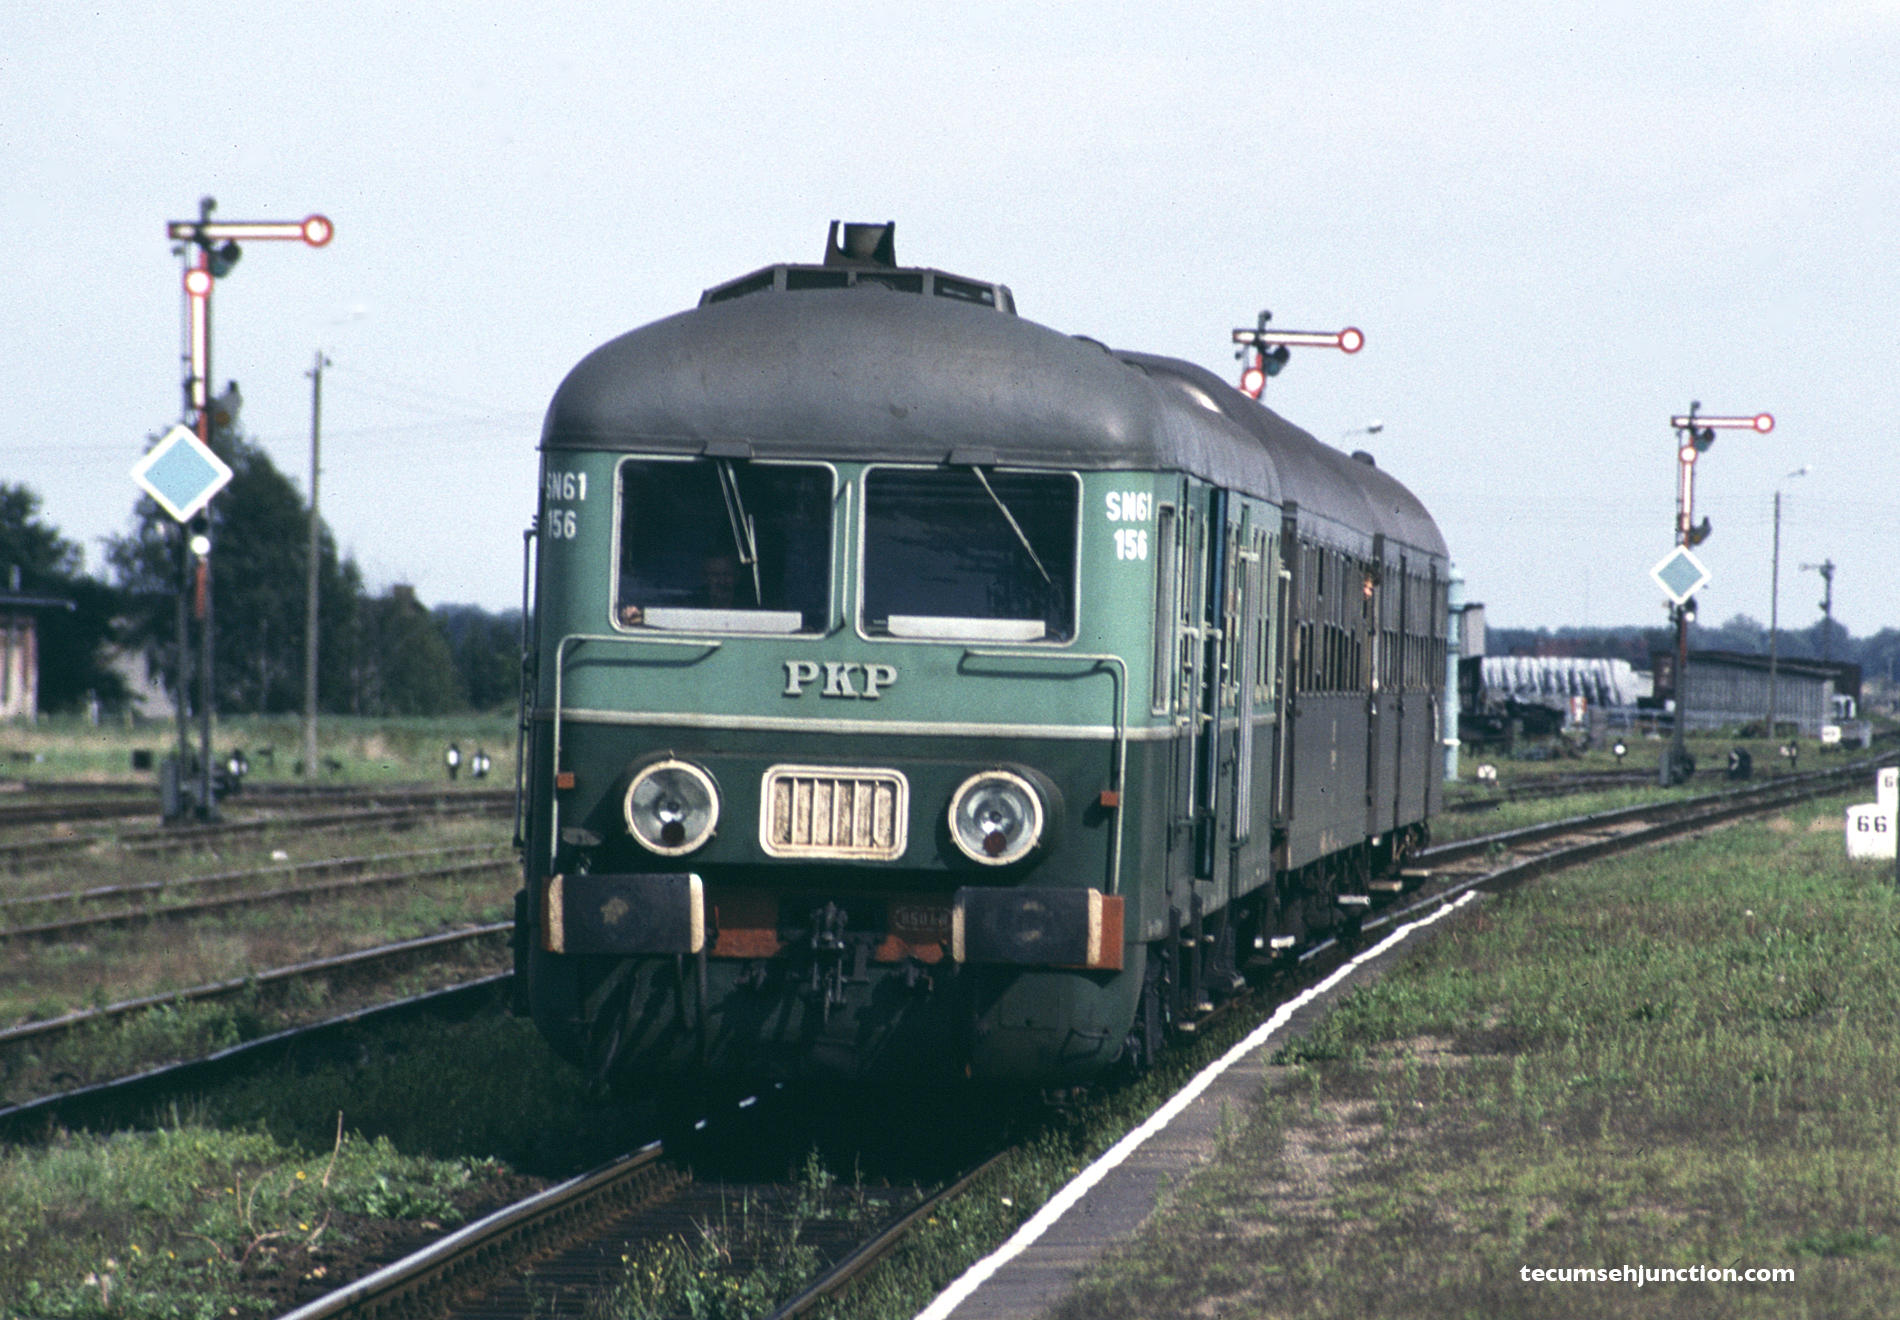 PKP SN61-156 arrives in Czersk, Poland on 07 September 1990